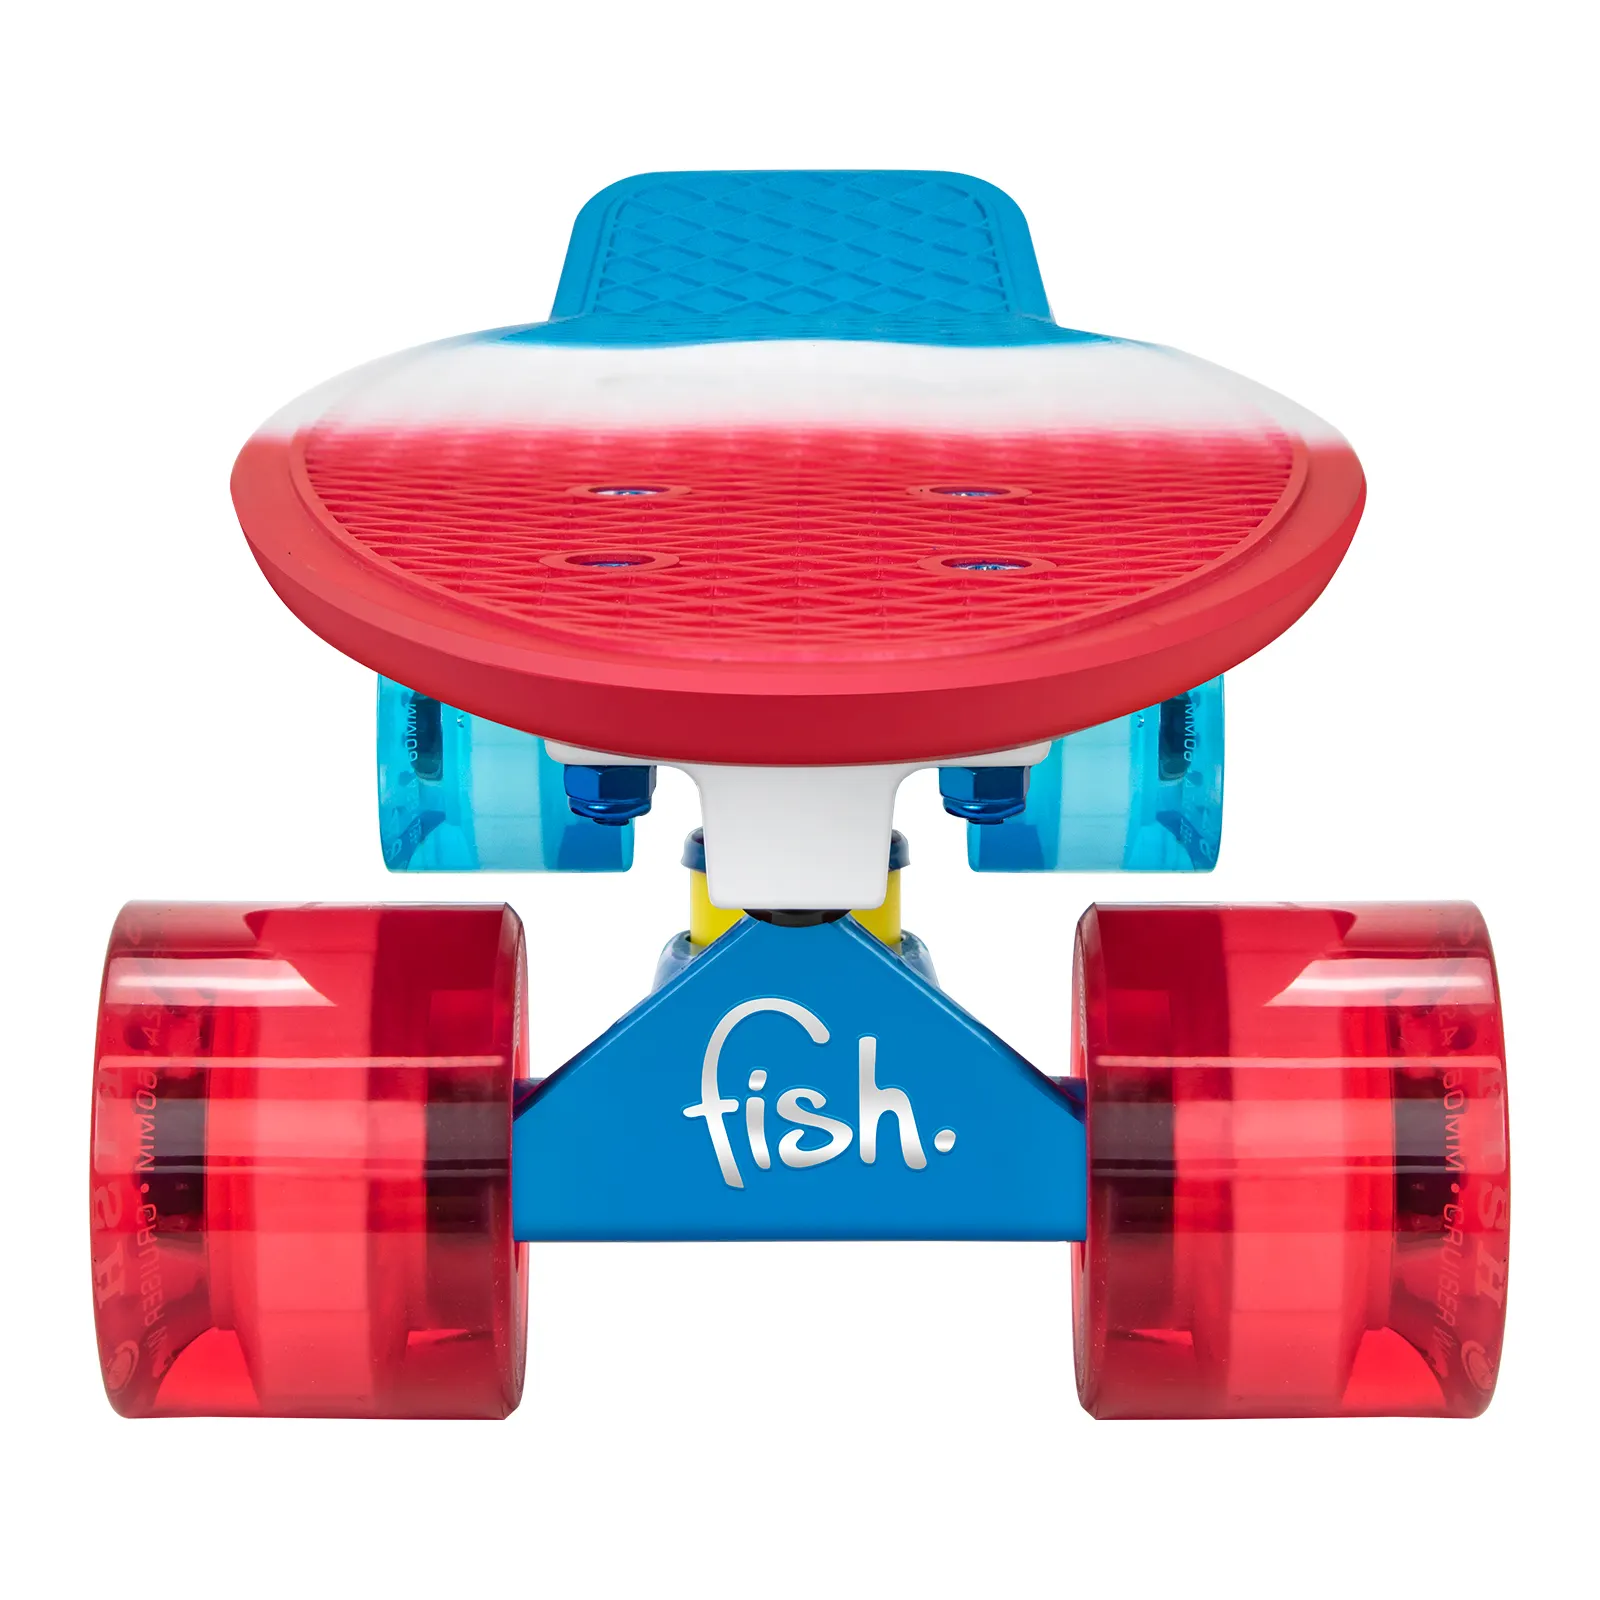 Die neueste 22-zoll mini cruiser kinder outdoor fisch bord skateboard